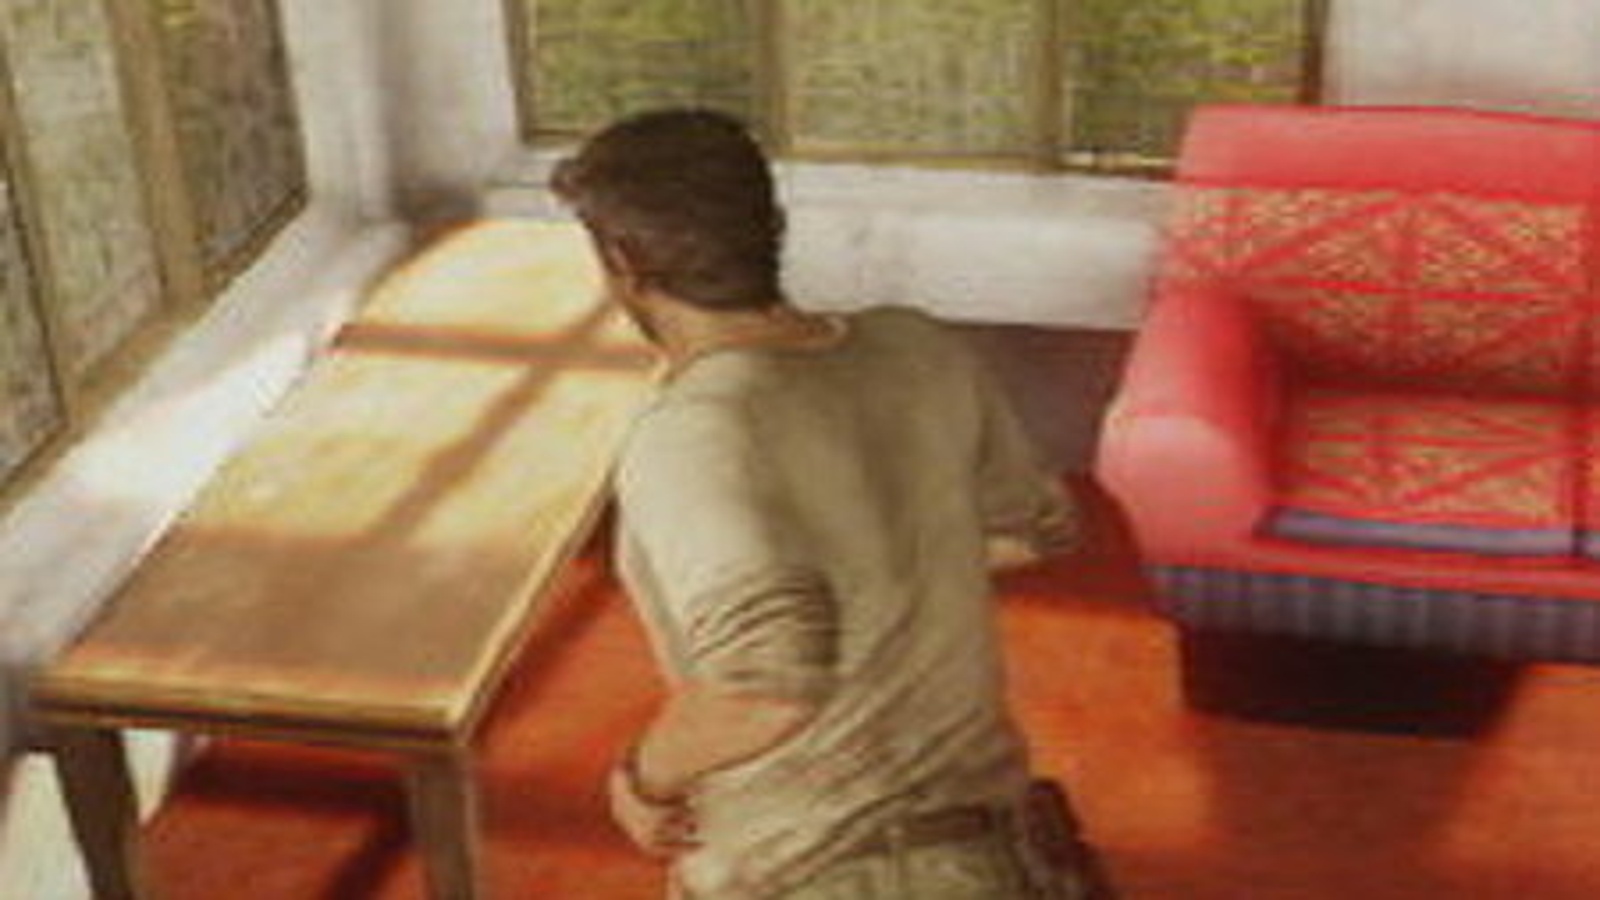 Uncharted 3: Drake's Deception' no tendrá modo cooperativo pero sí un mundo  más abierto